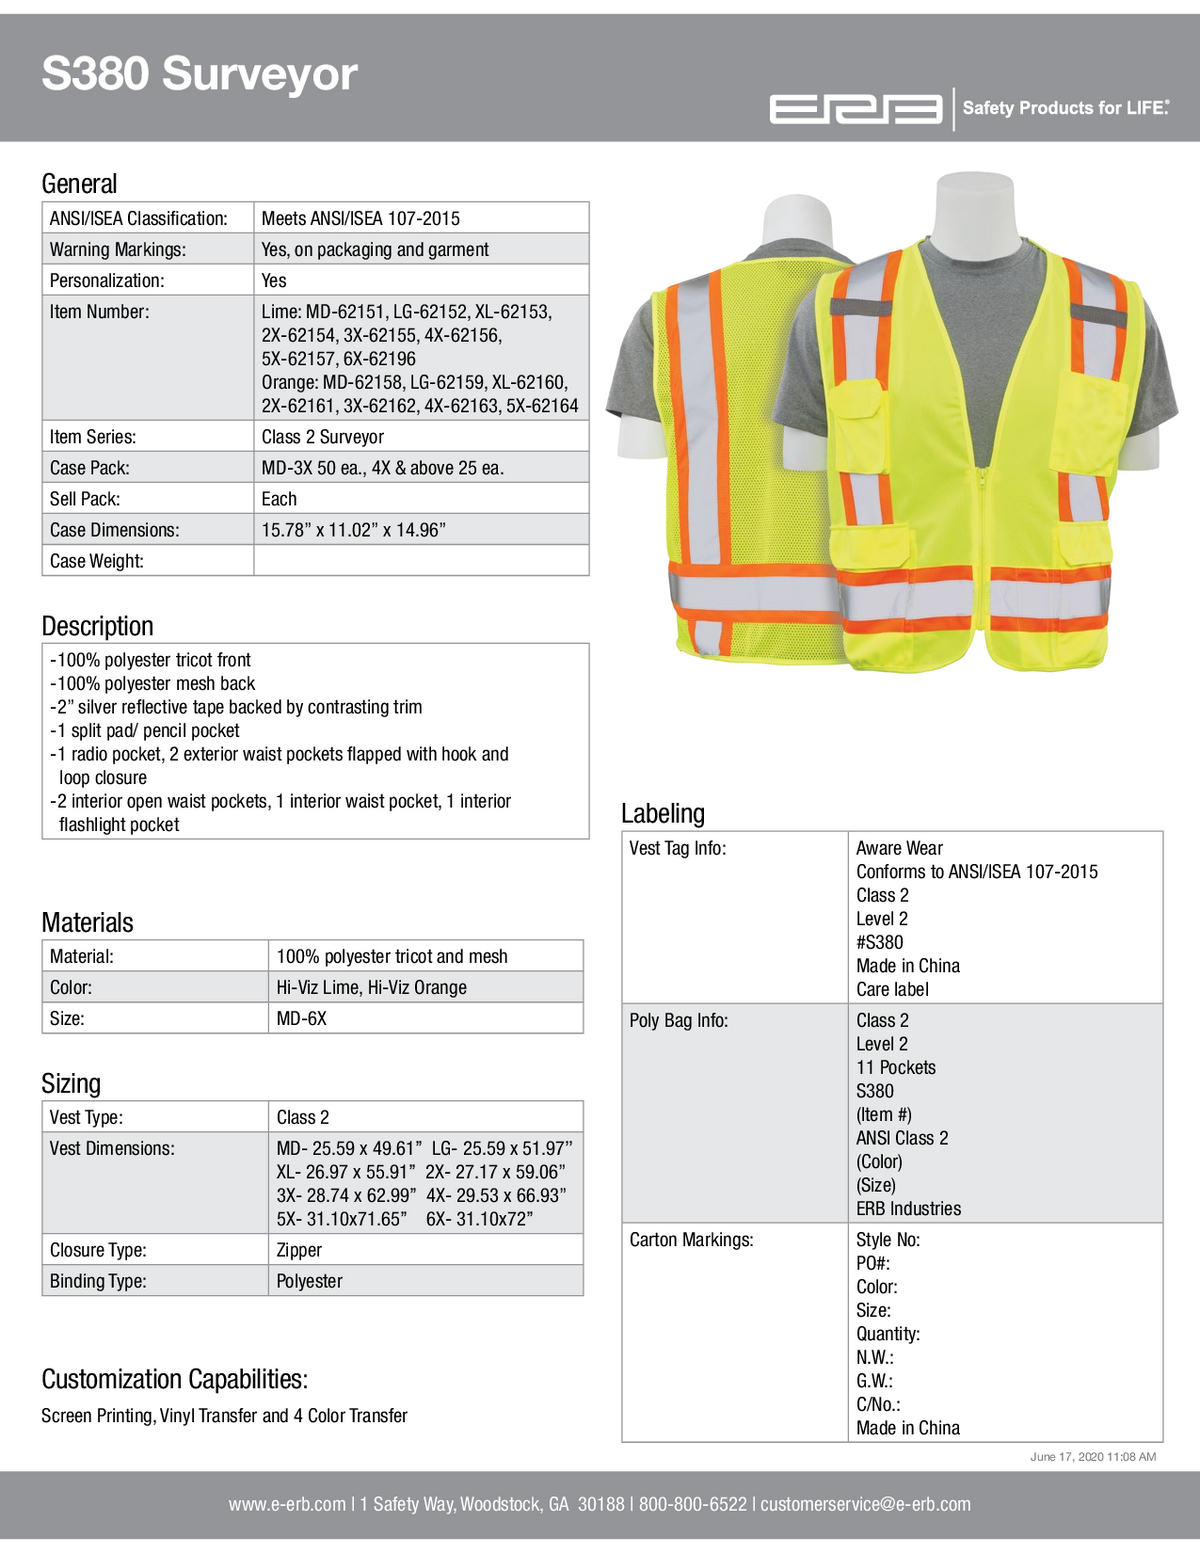 S380 Class 2 Surveyor&#39;s Safety Vest with Mesh Back 1PC